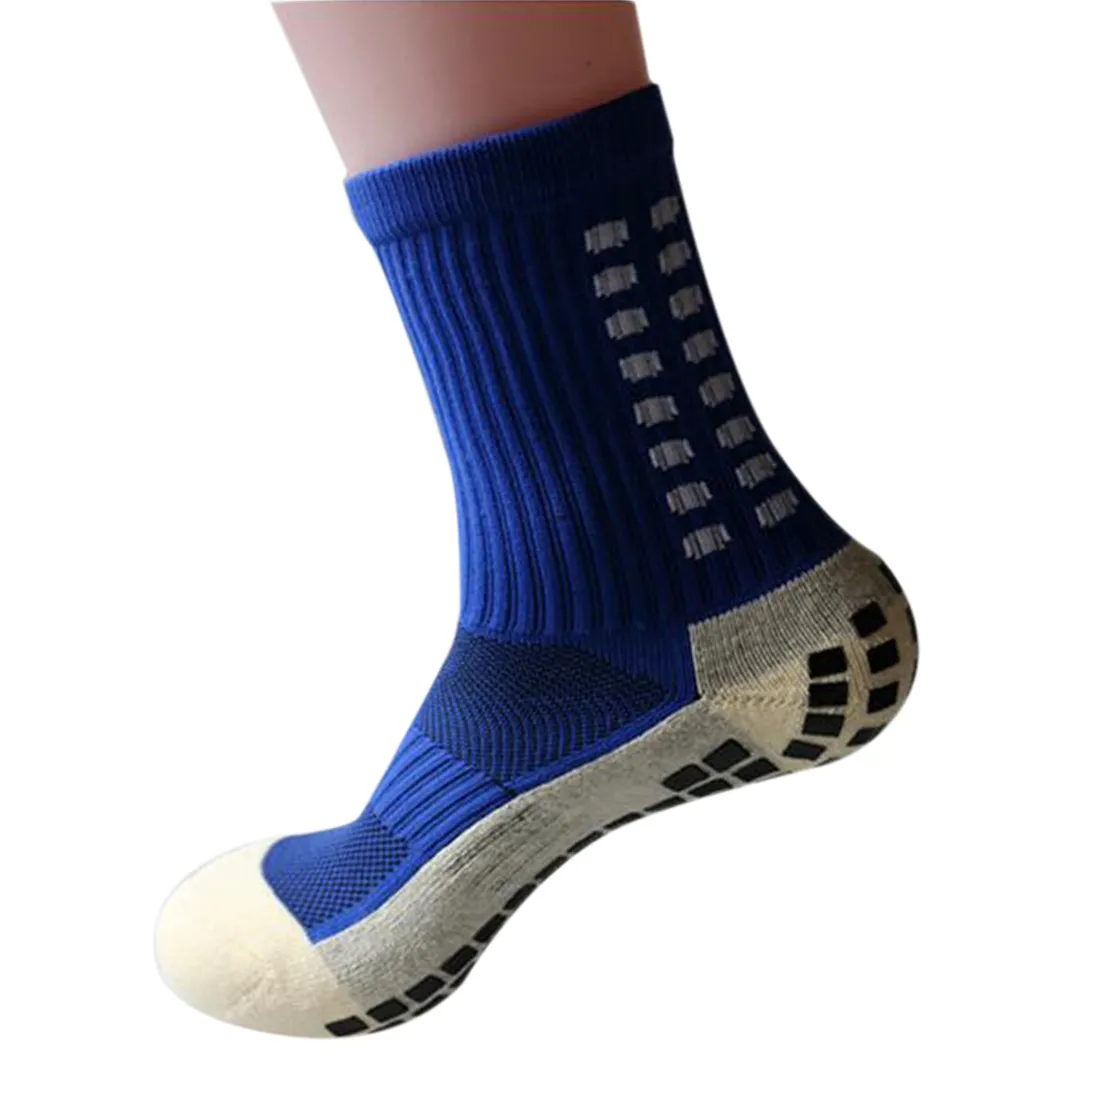 Anti-Slip Breathable Men Summer Running Cotton and Rubber Socks Football Socks High Quality Men ZA Men Women Cycling Socks